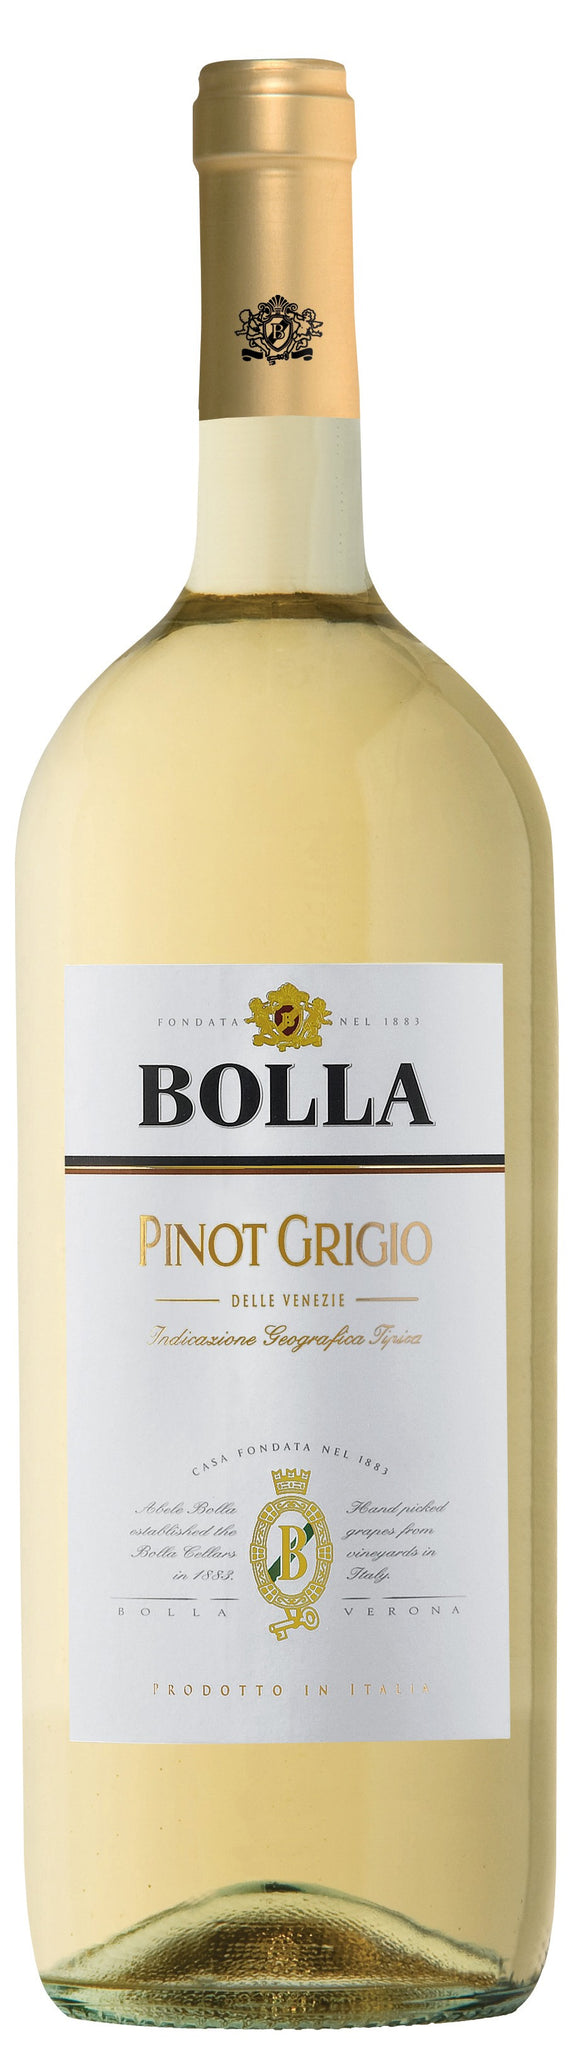 bel>Wine, Pinot Grigio, Della Venezia, Bolla